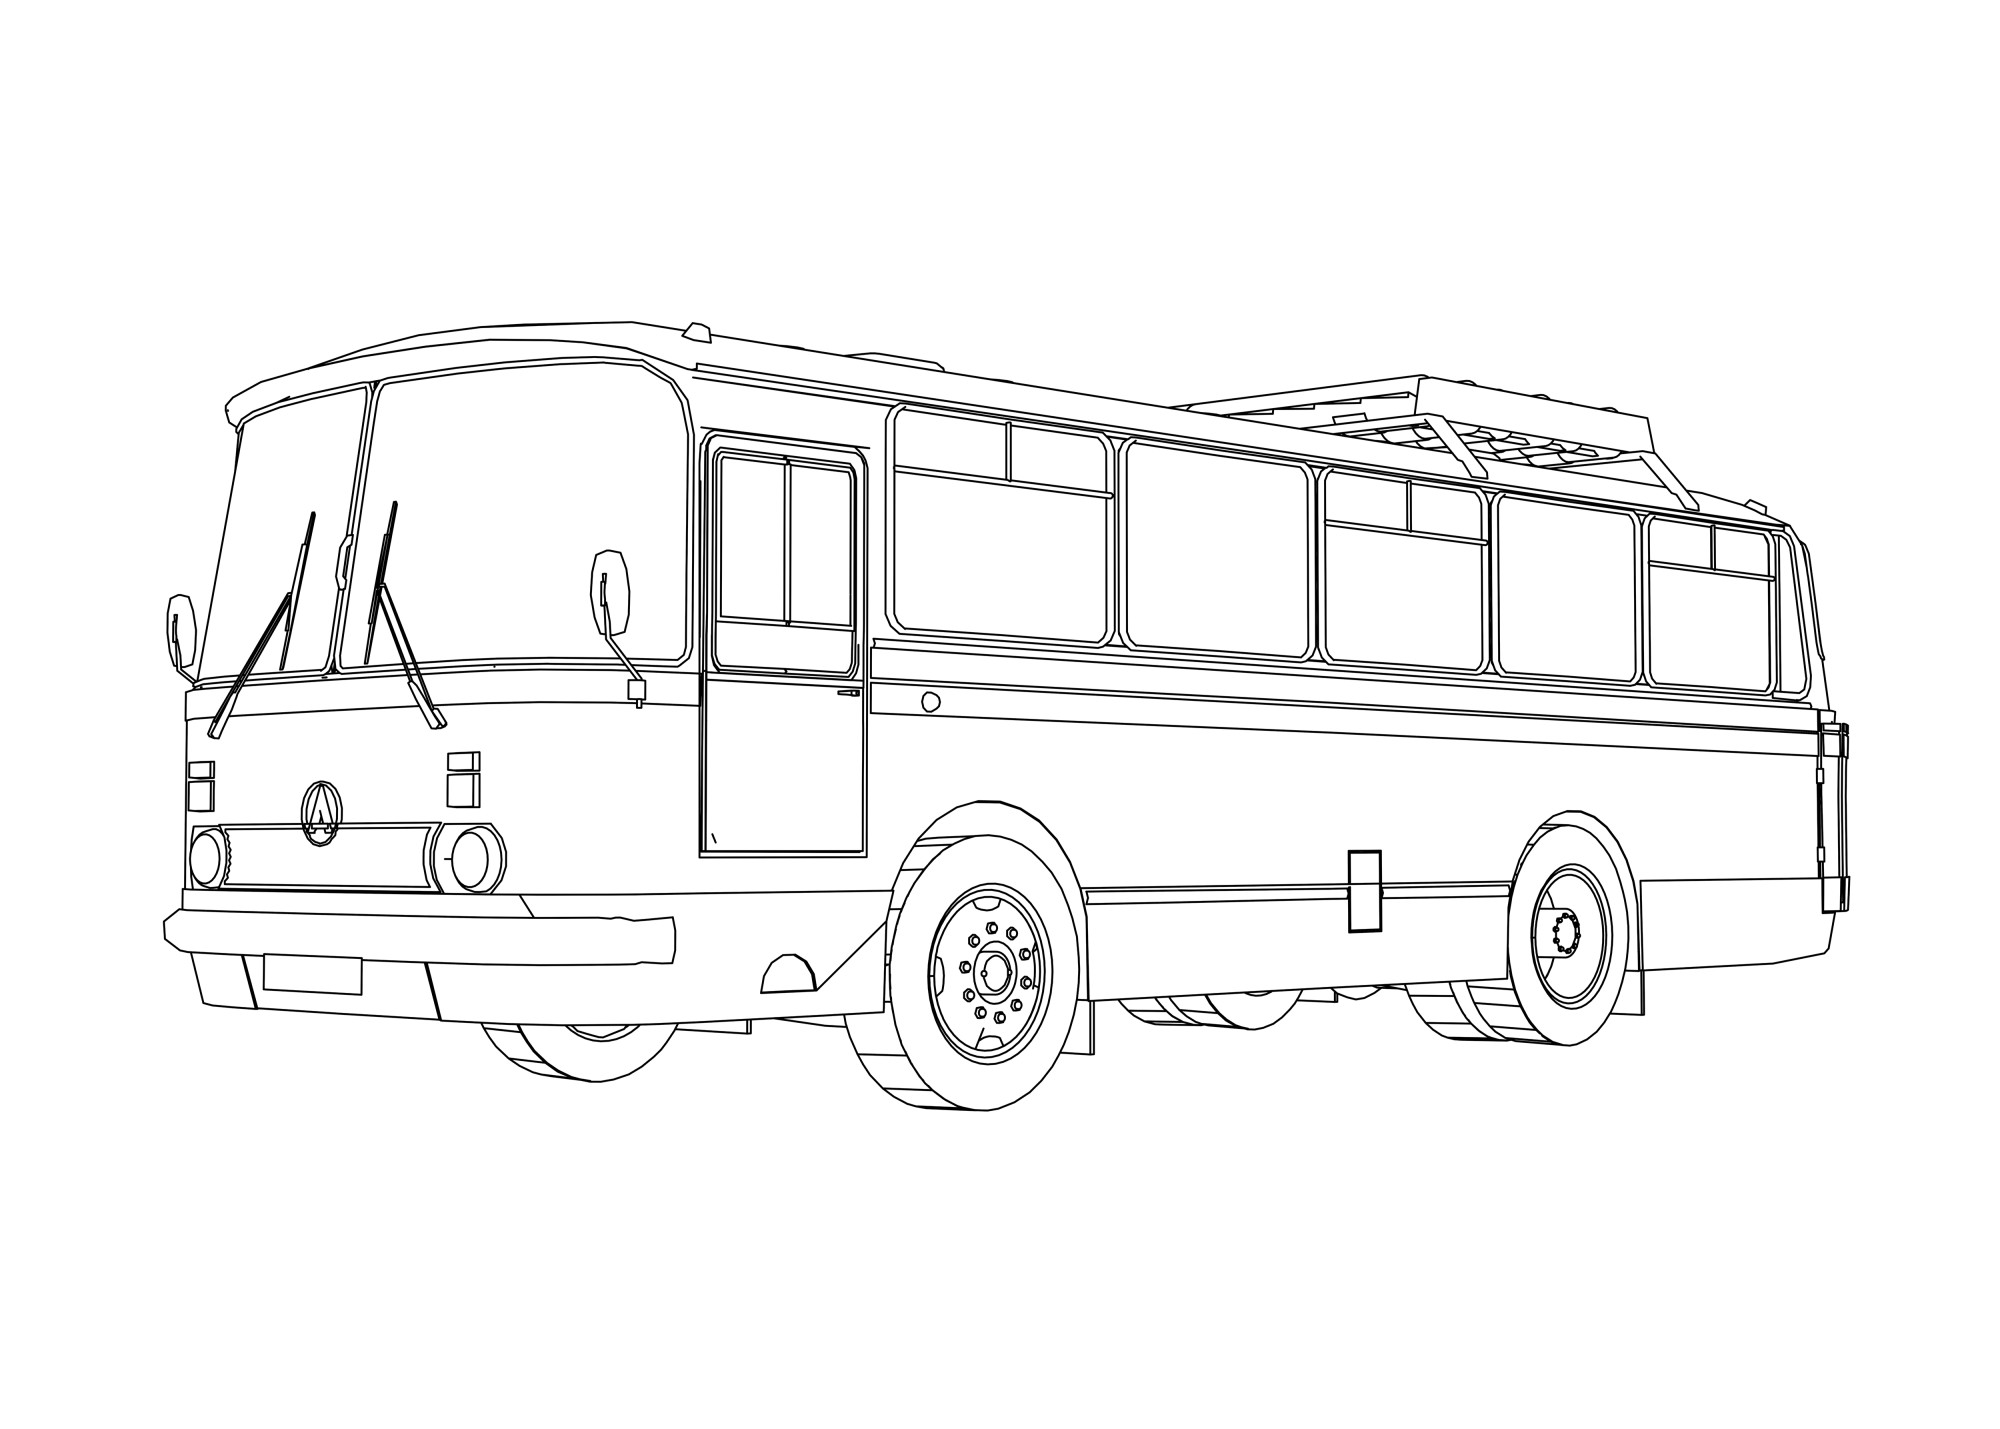 Раскраска для детей: старый автобус ЛиАЗ